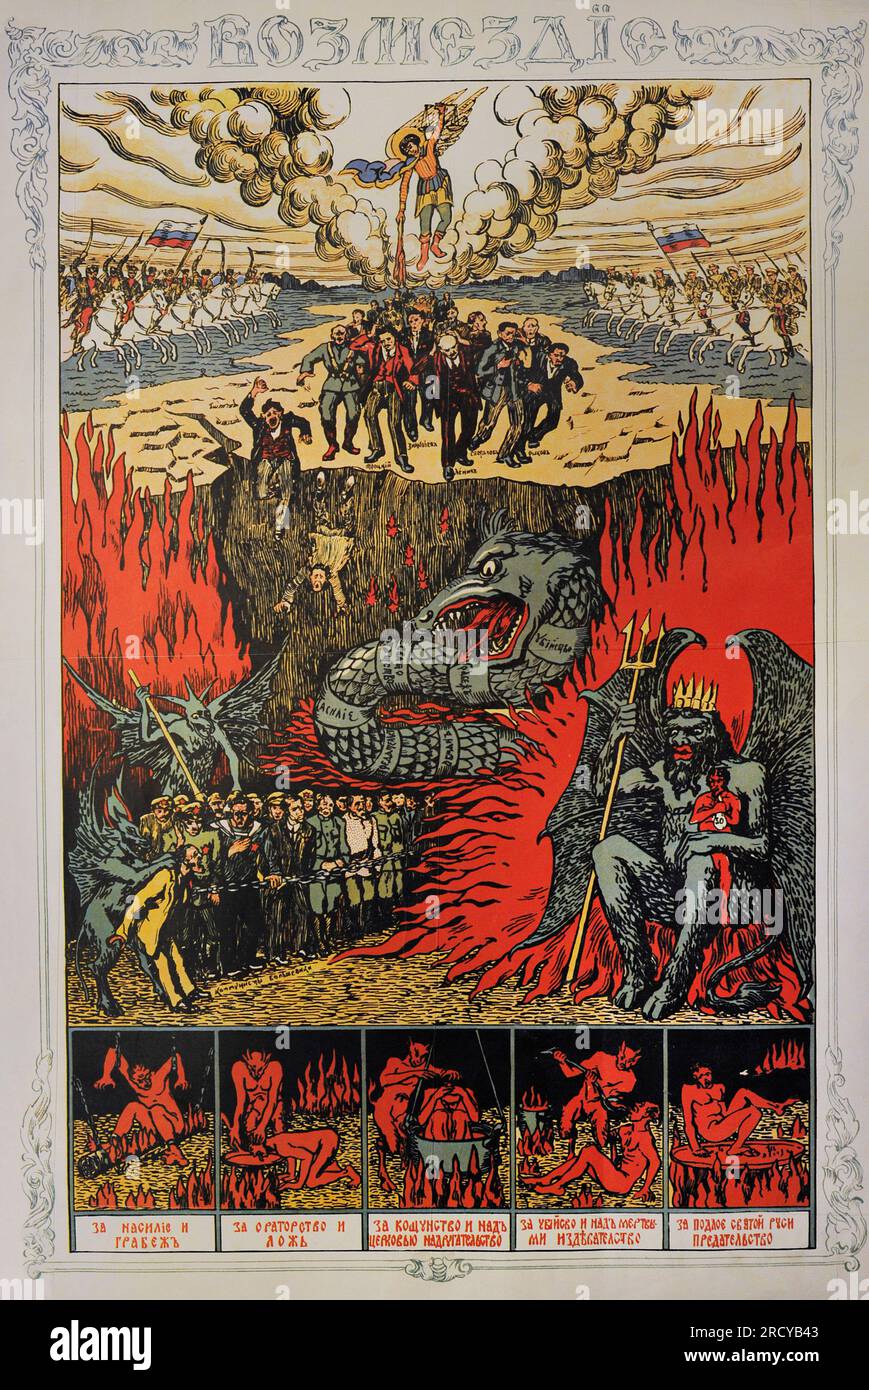 Guerra civile russa (1917-19123). Manifesto diretto contro il dominio sovietico 'vendetta', emesso dagli eserciti anti-bolscevichi meridionali, 1918-1920. I bolscevichi sono il posto dell'inferno. Autore sconosciuto. Foto Stock